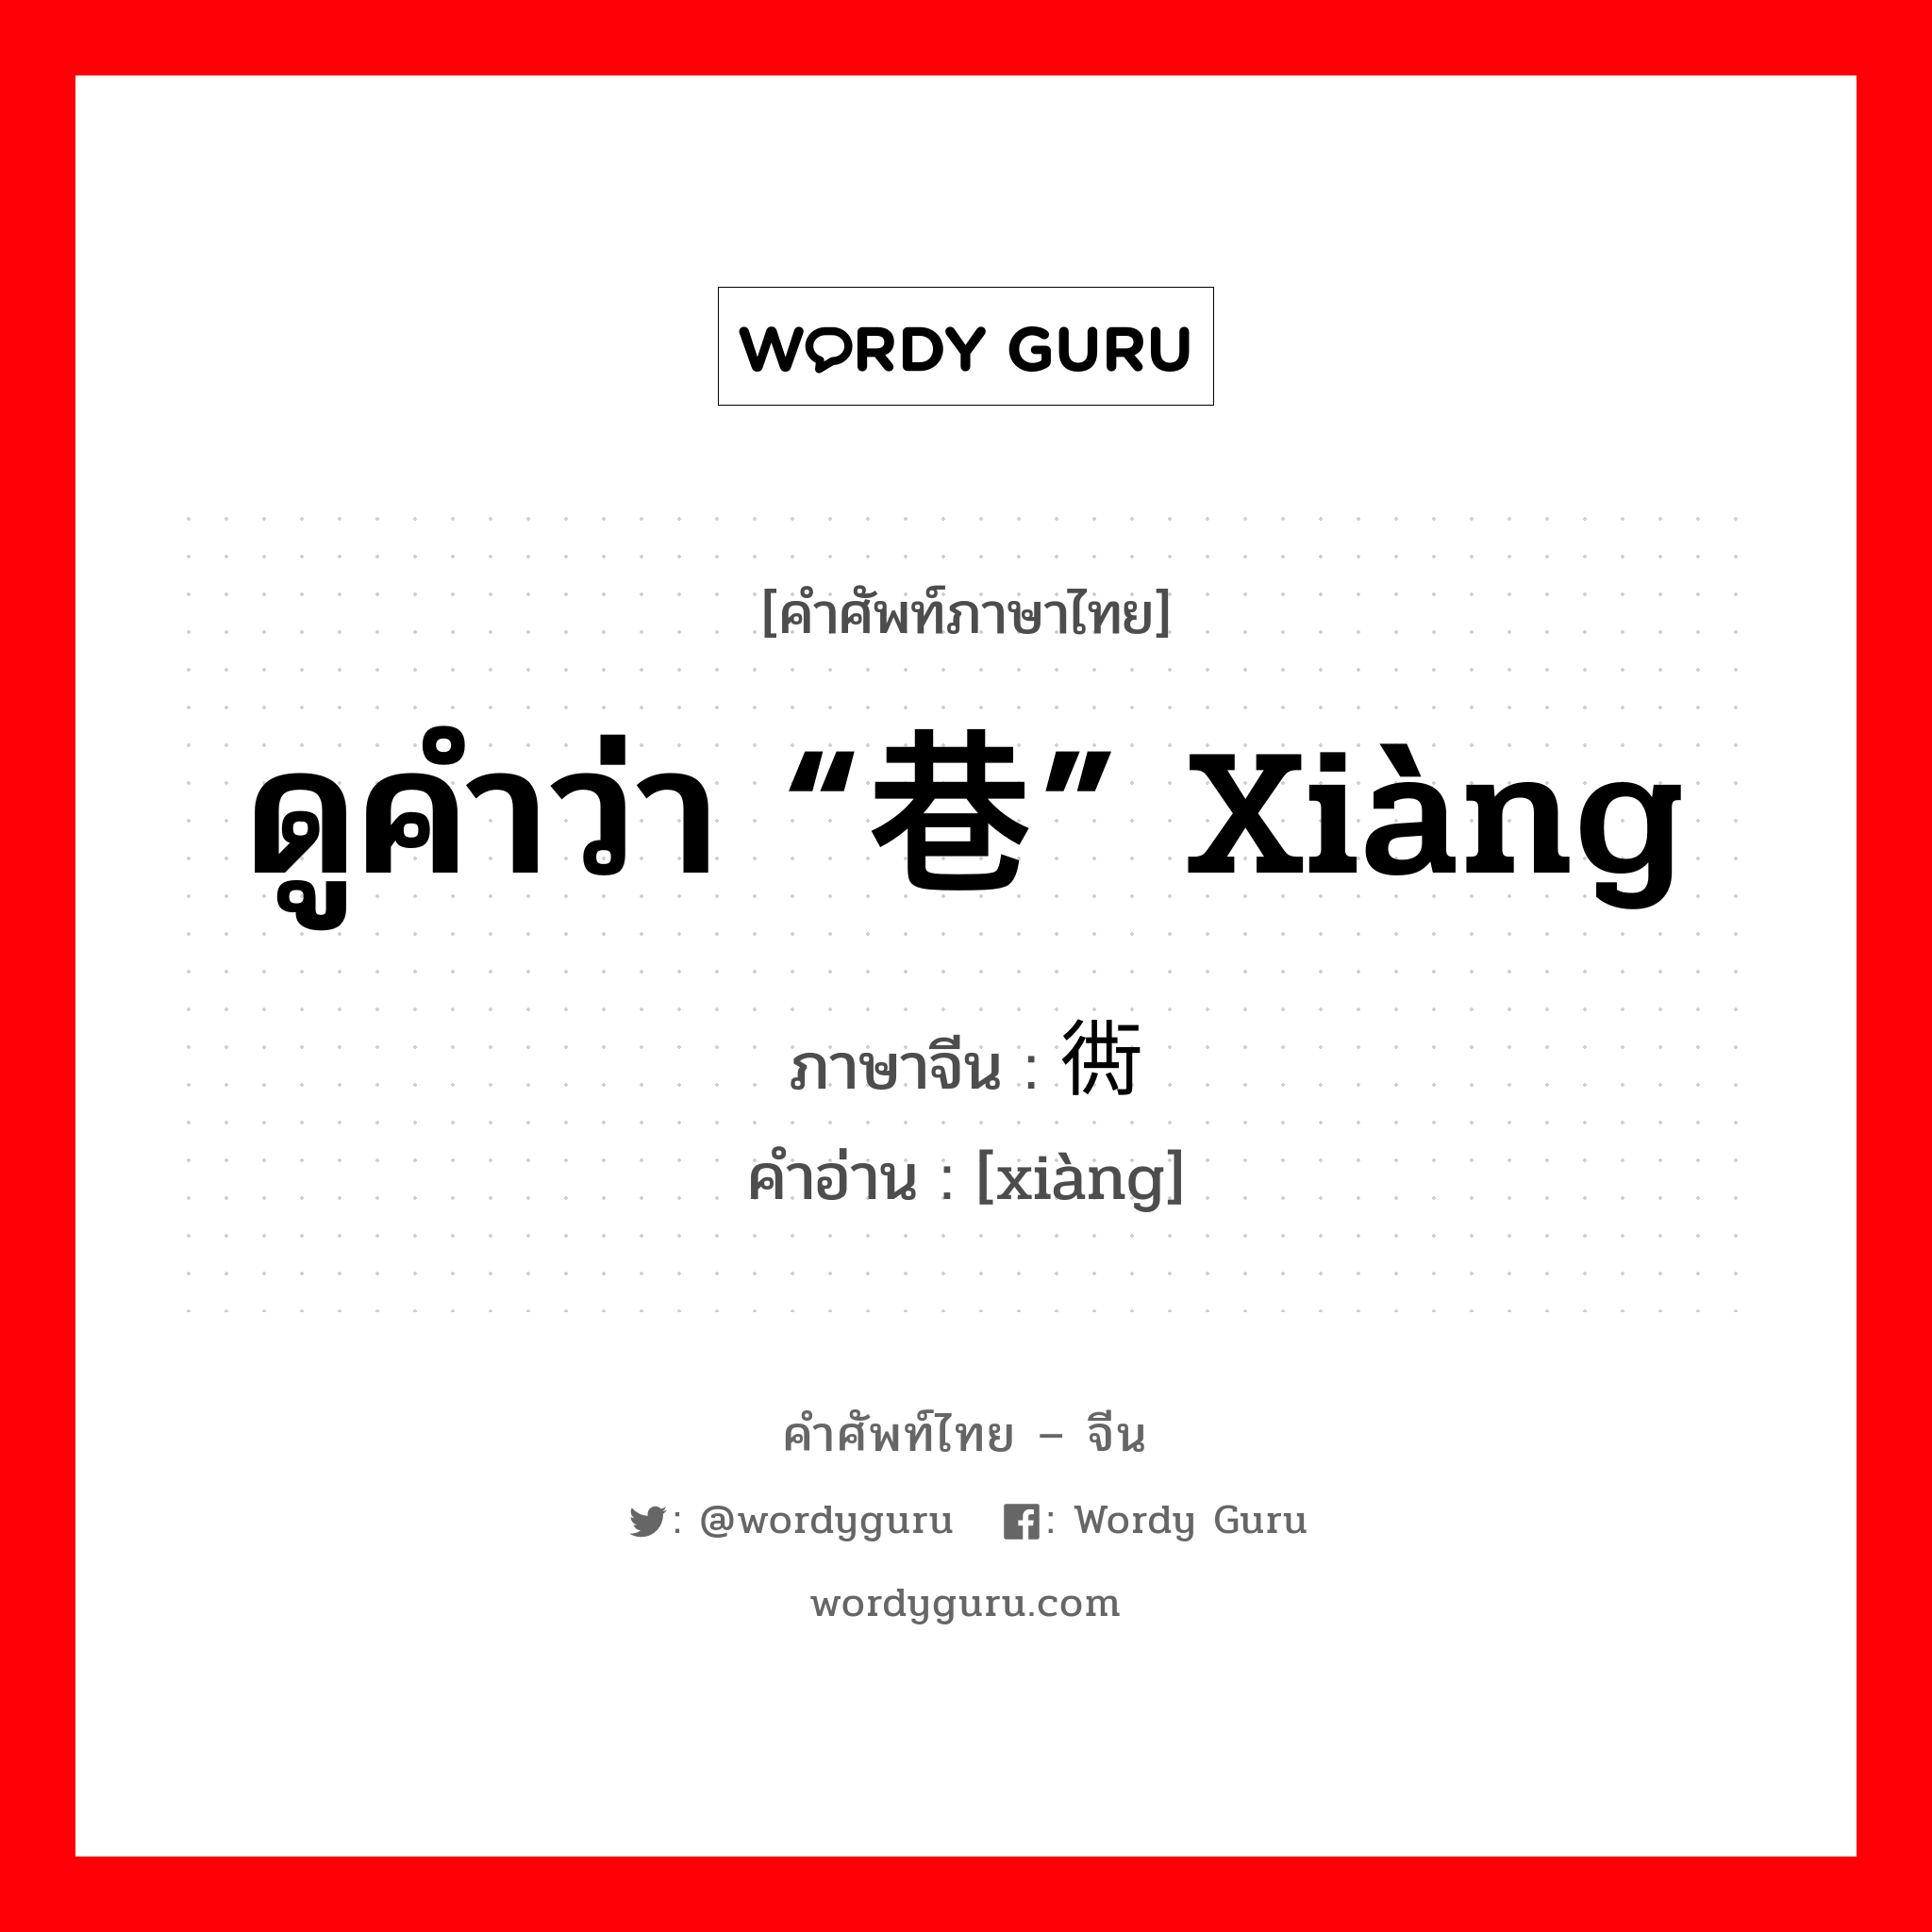 ดูคำว่า “巷” xiàng ภาษาจีนคืออะไร, คำศัพท์ภาษาไทย - จีน ดูคำว่า “巷” xiàng ภาษาจีน 衖 คำอ่าน [xiàng]